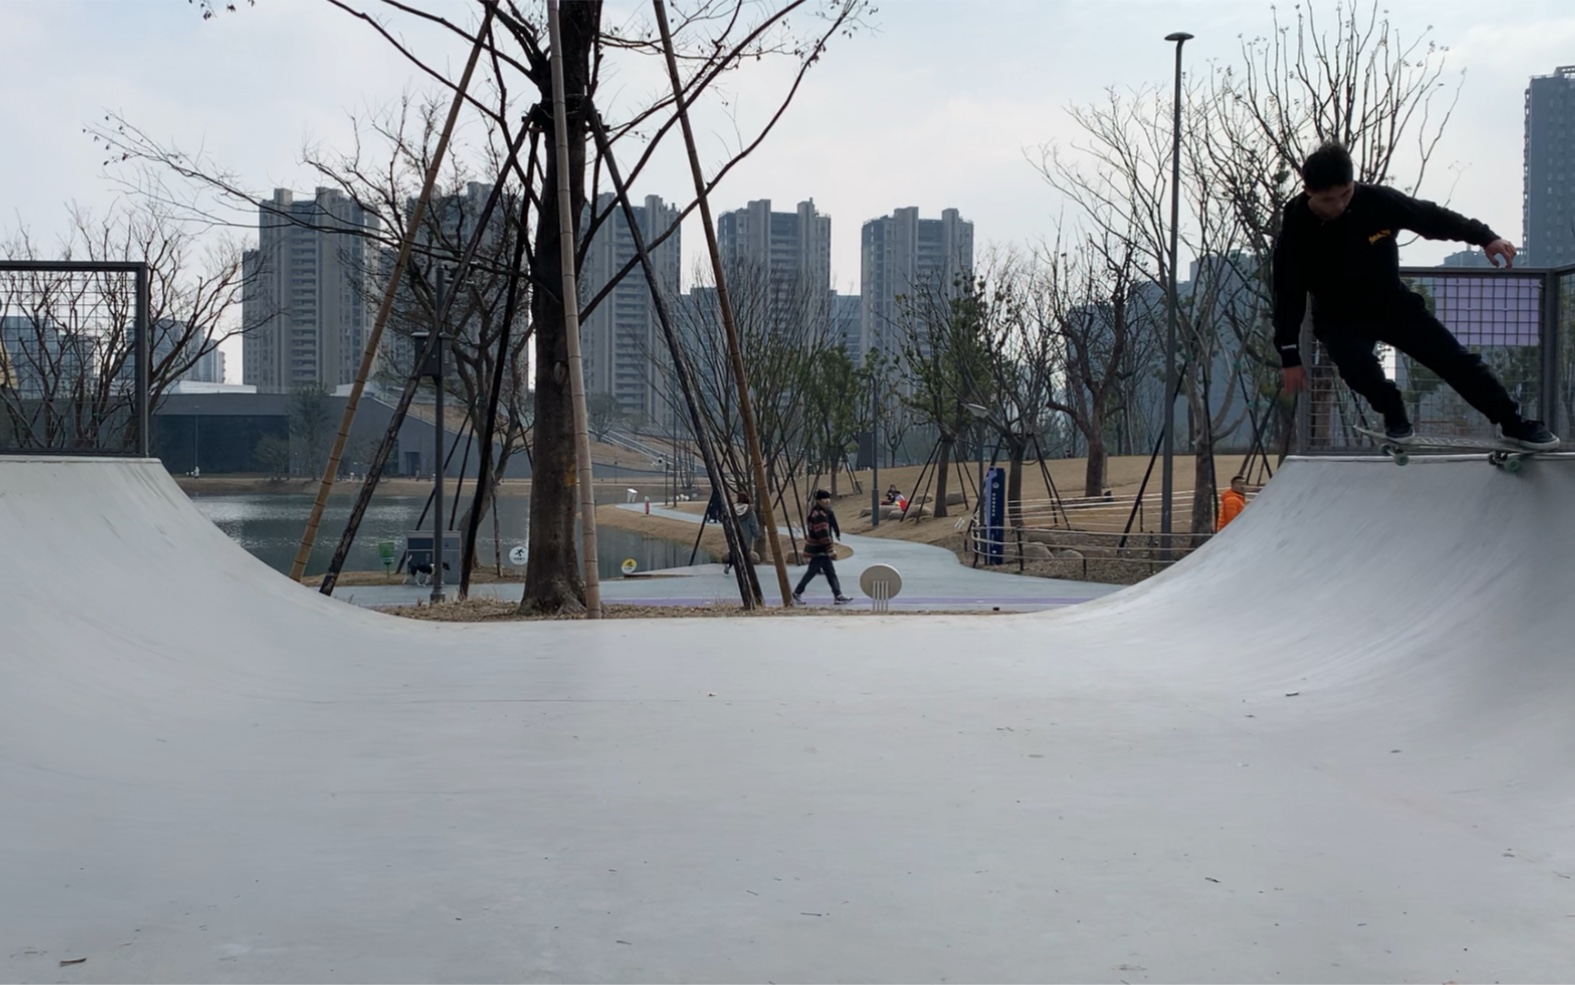 亚运滑板公园图片